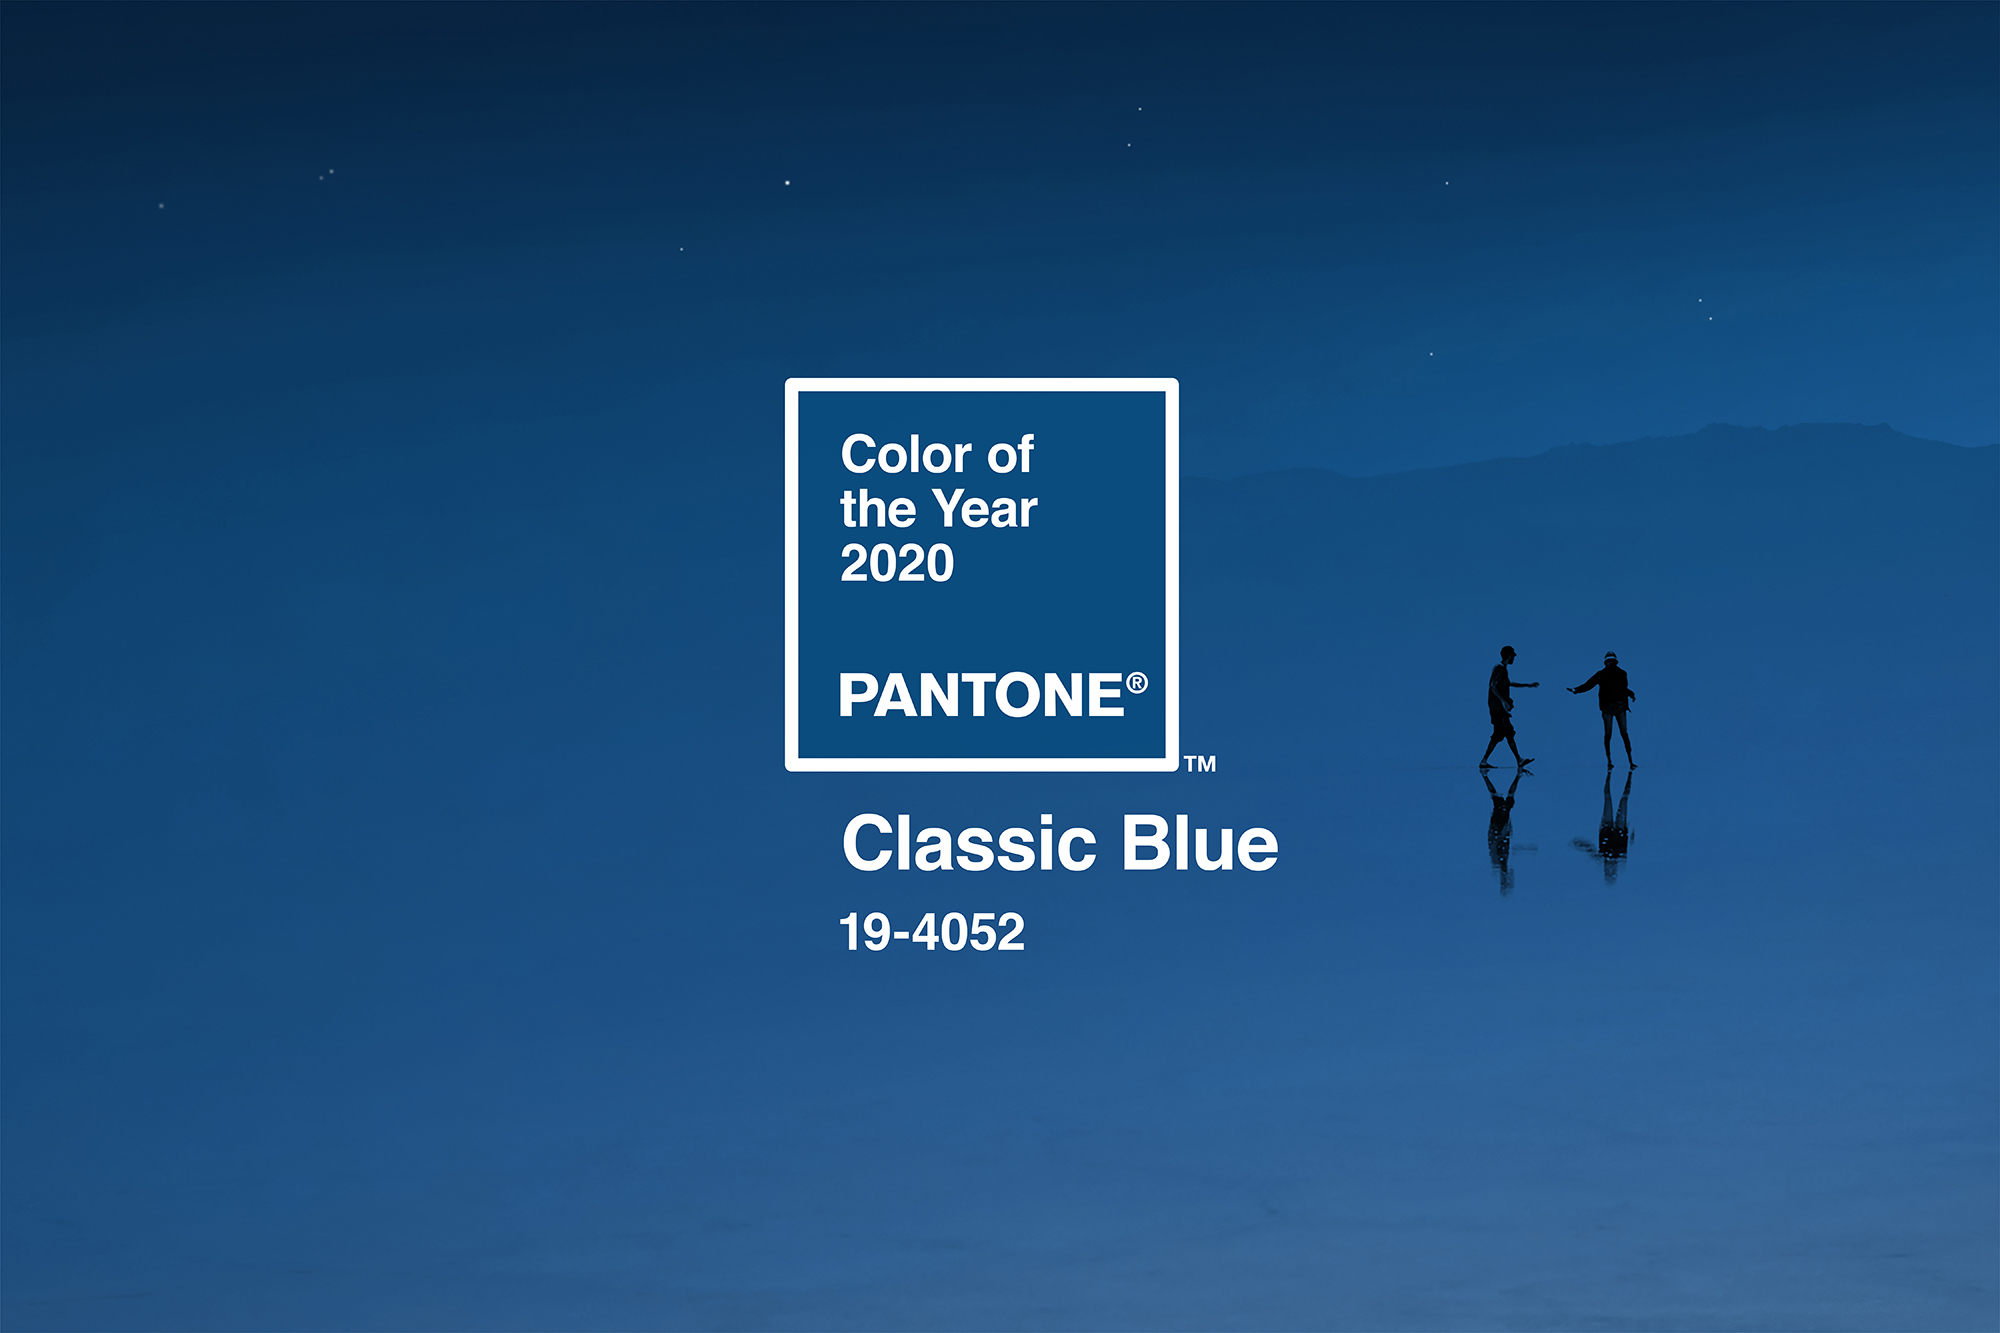 Classic Blue - Màu của năm 2020 vừa được Pantone công bố - RGB.vn